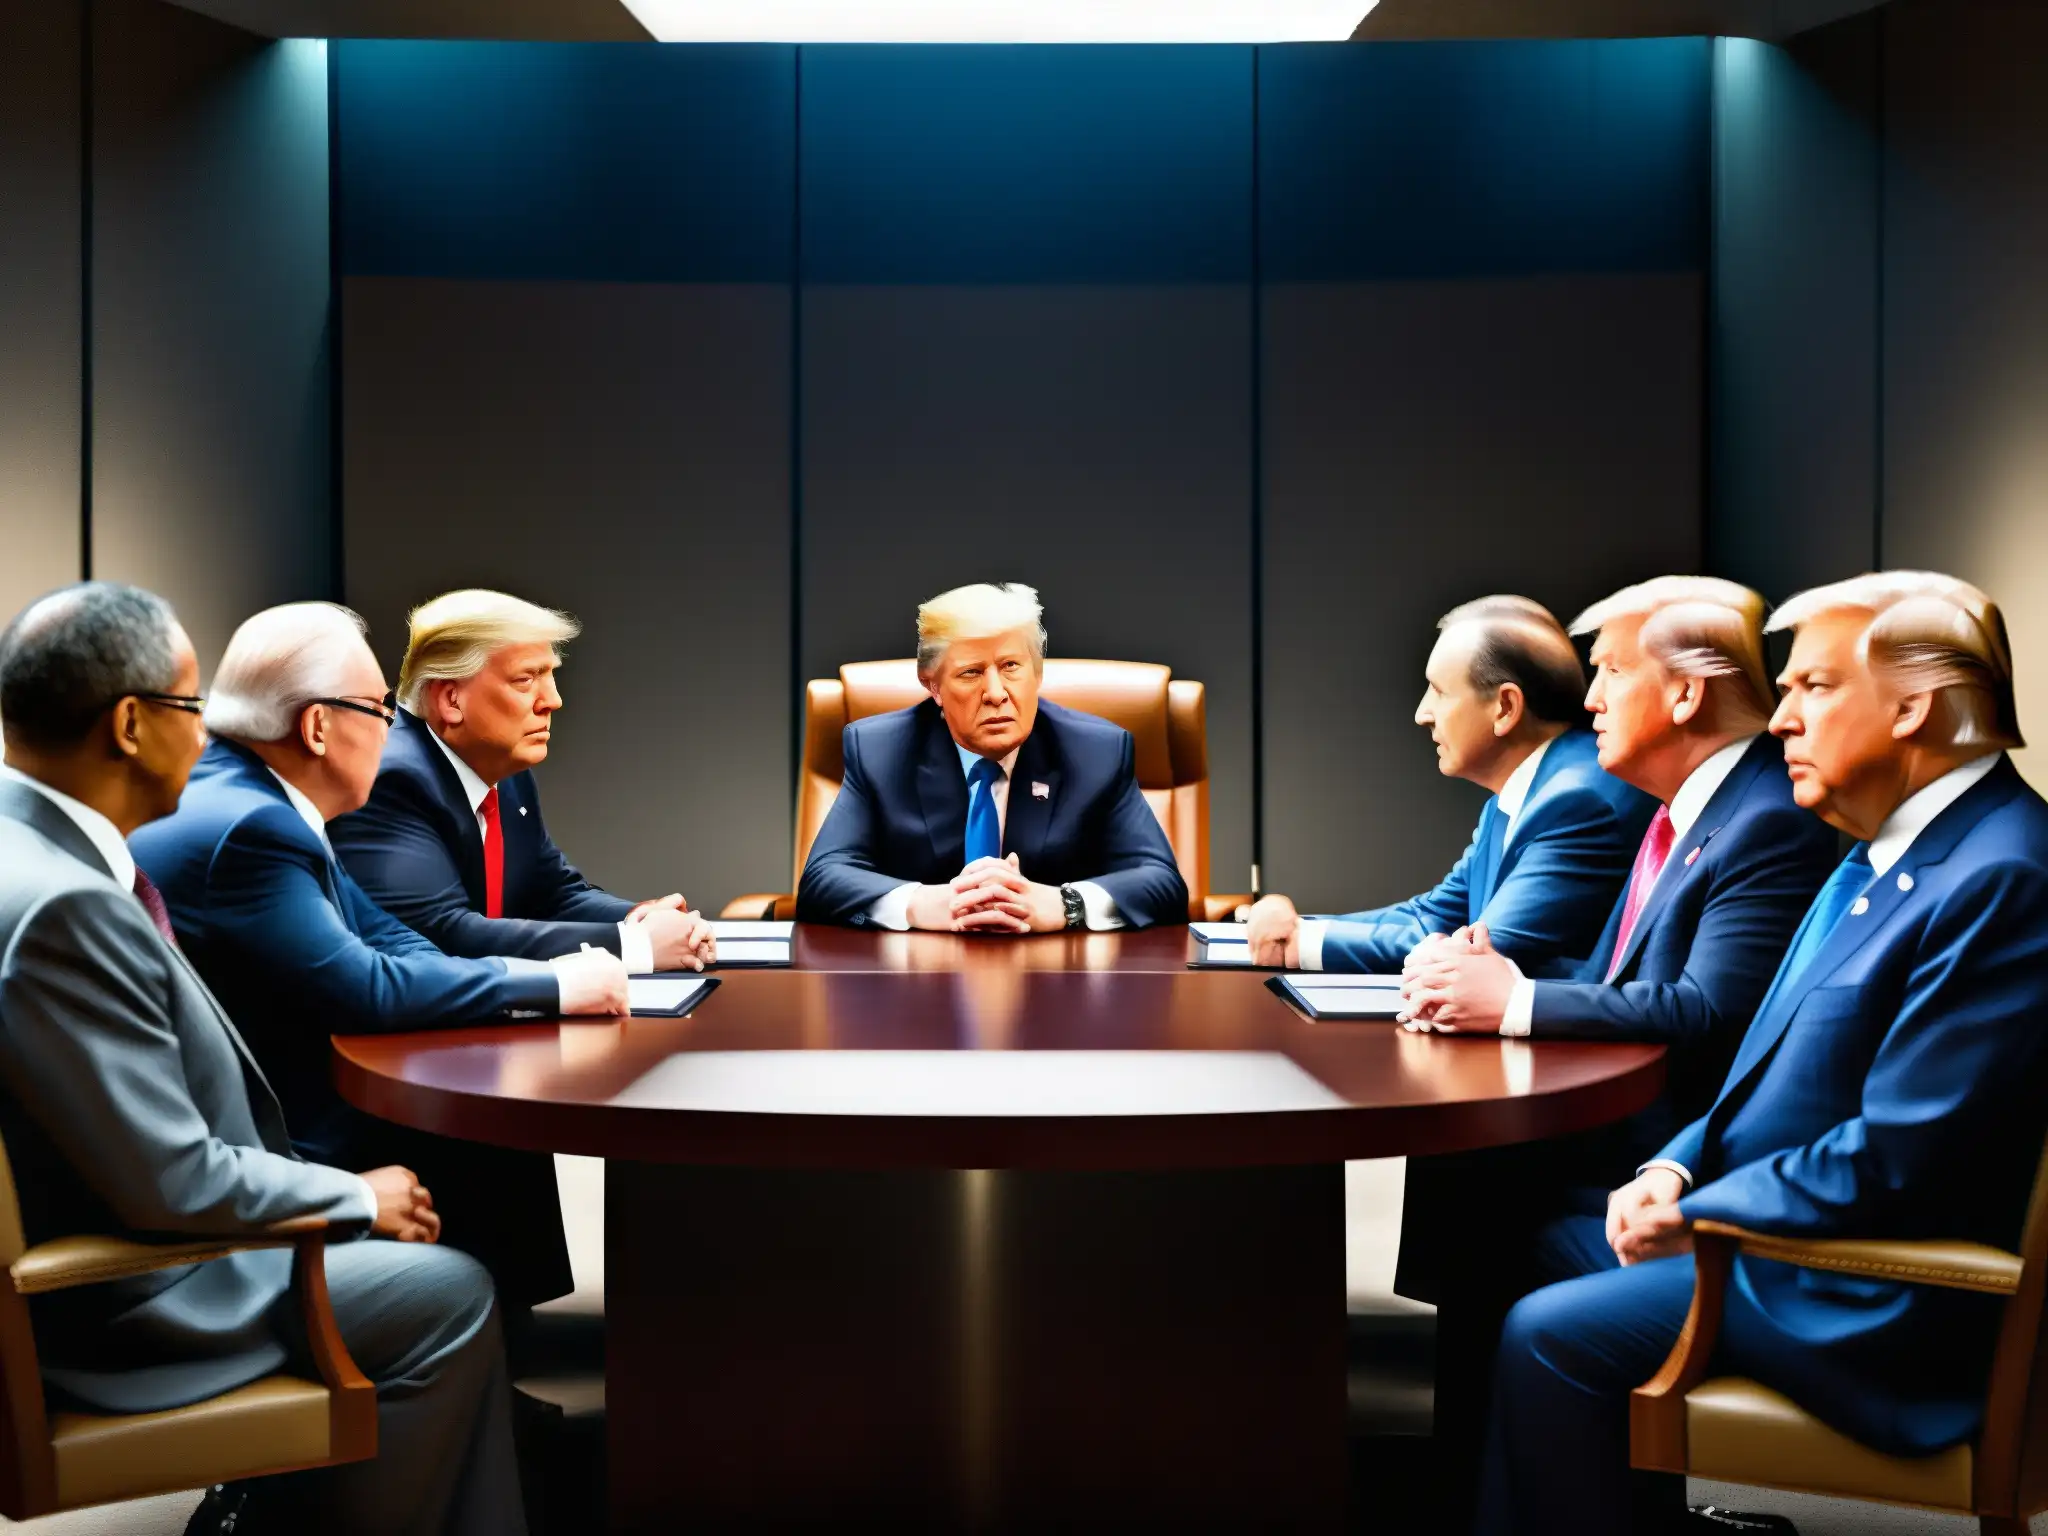 Imagen impactante de líderes mundiales en una reunión histórica, simbolizando el poder y el análisis del Nuevo Orden Mundial